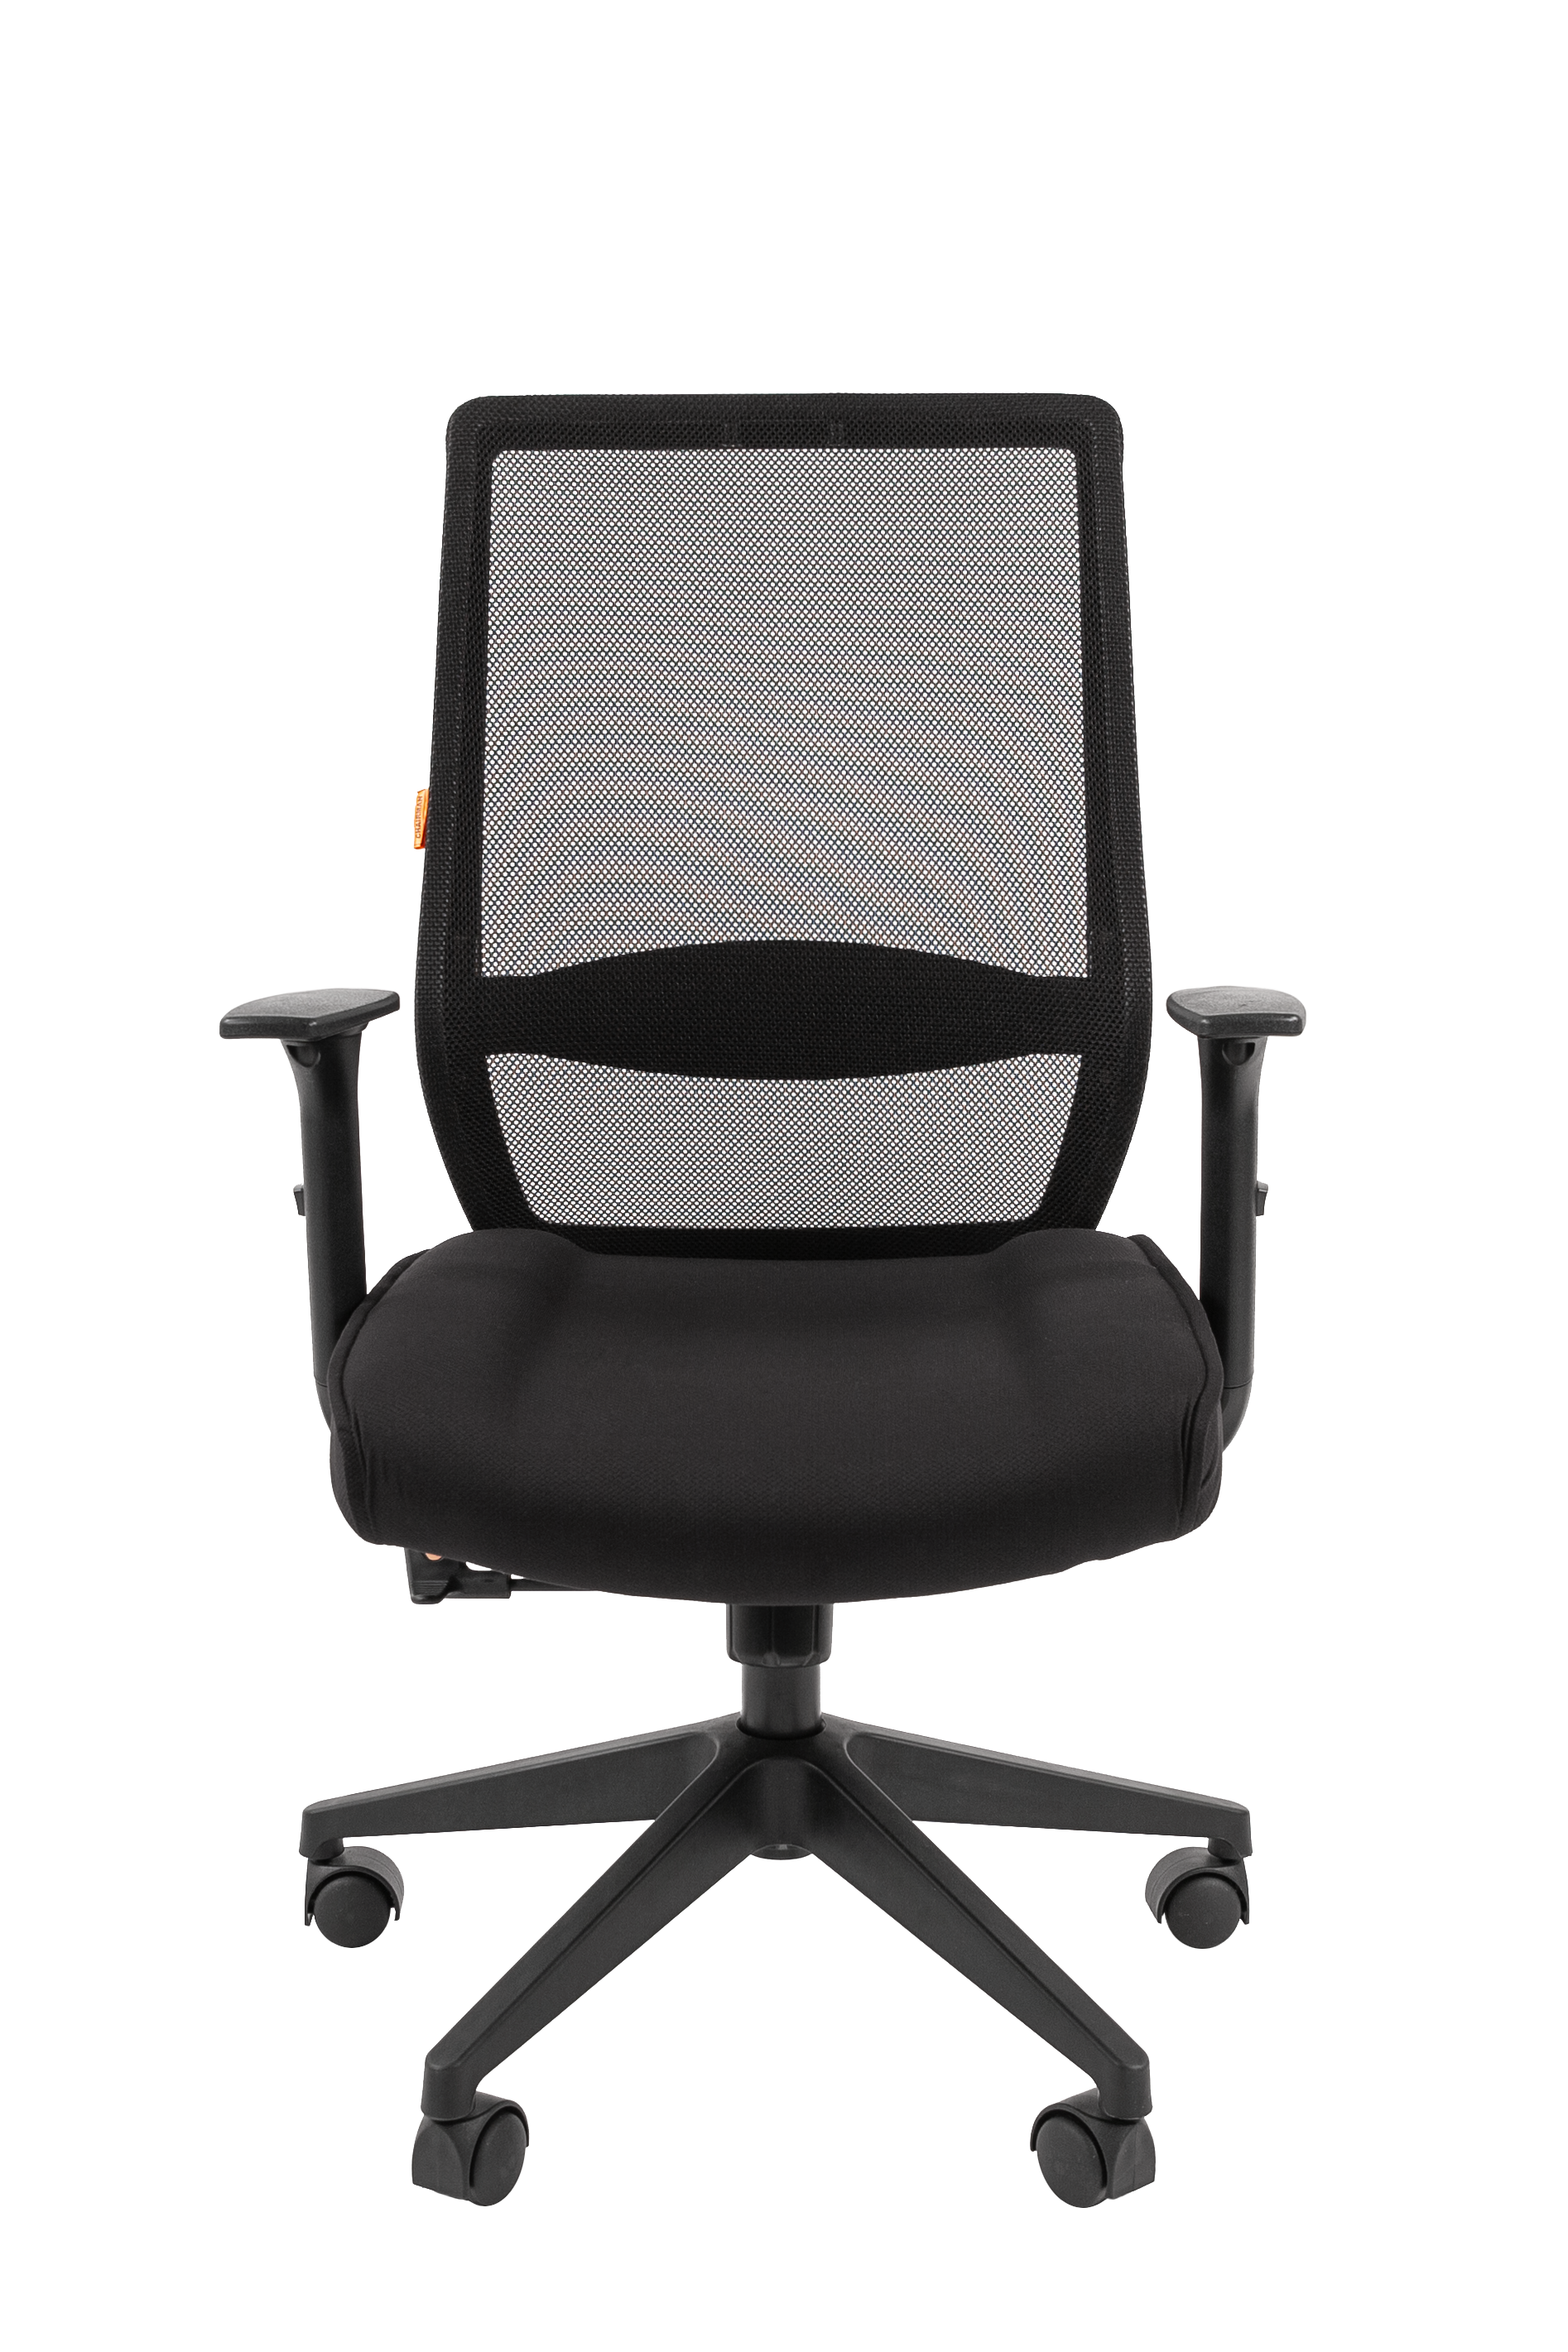 Кресло офисное CHAIRMAN 555 LT